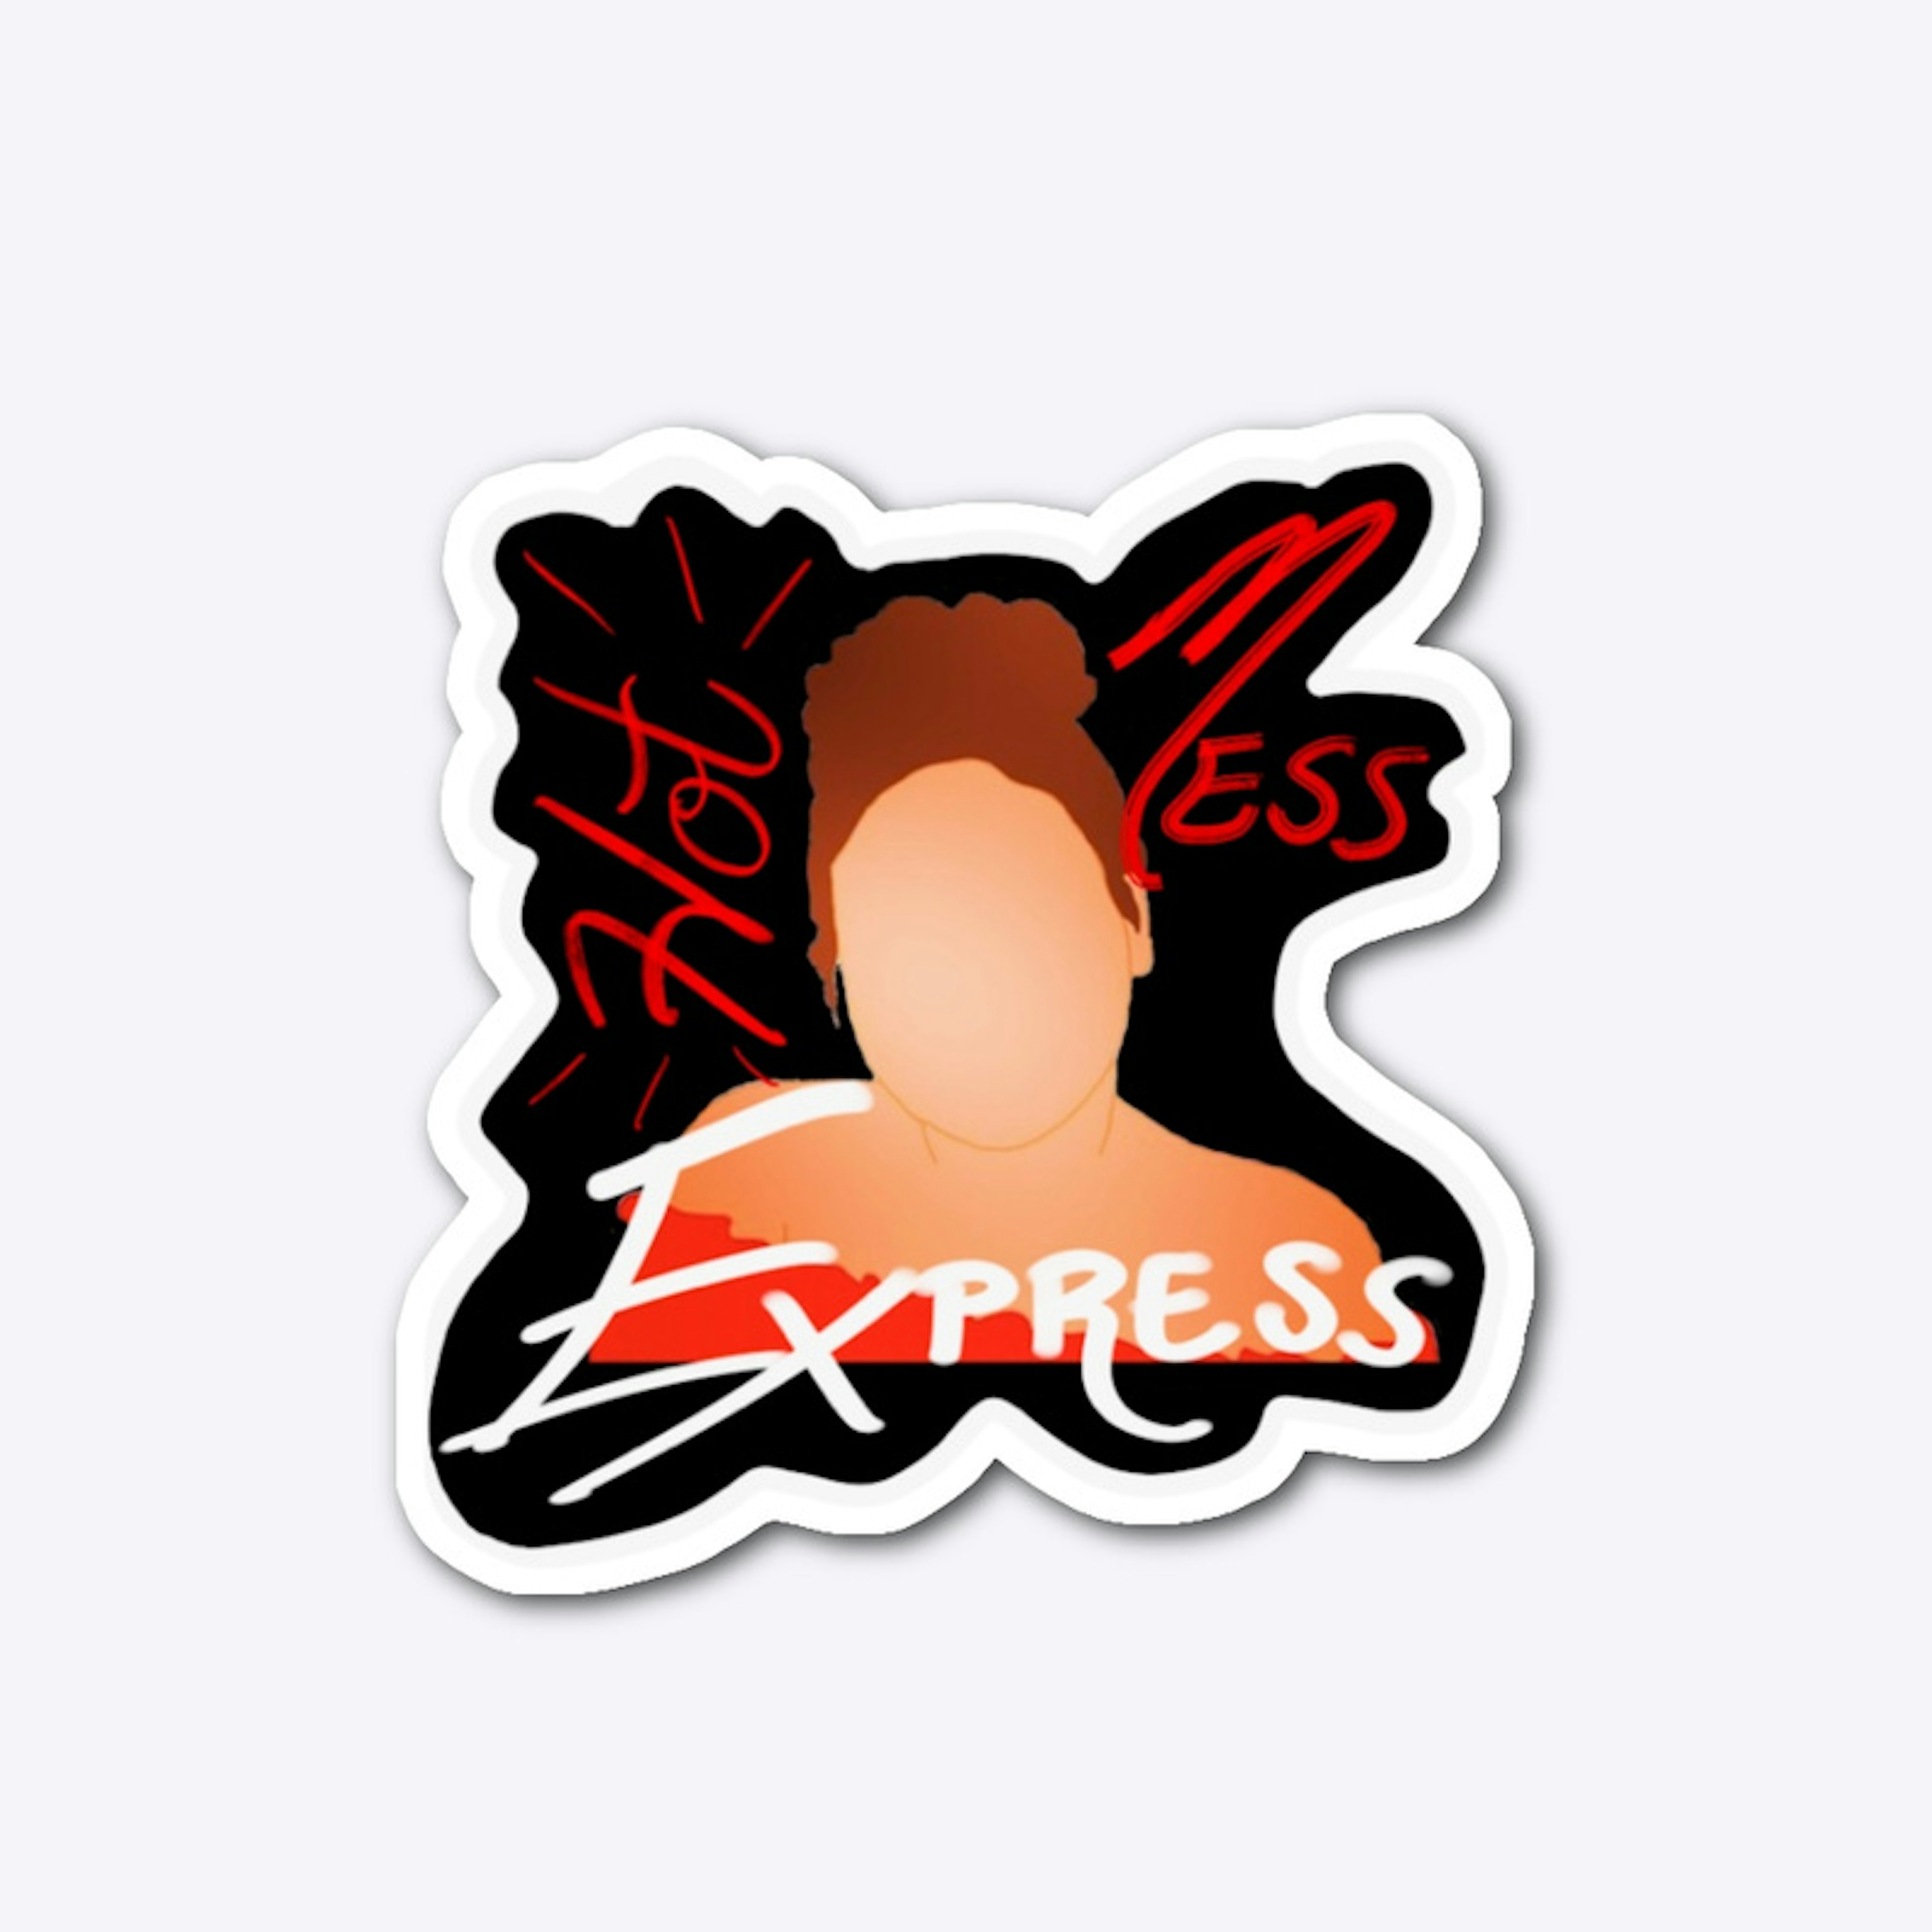 Hot Mess Express Sticker 